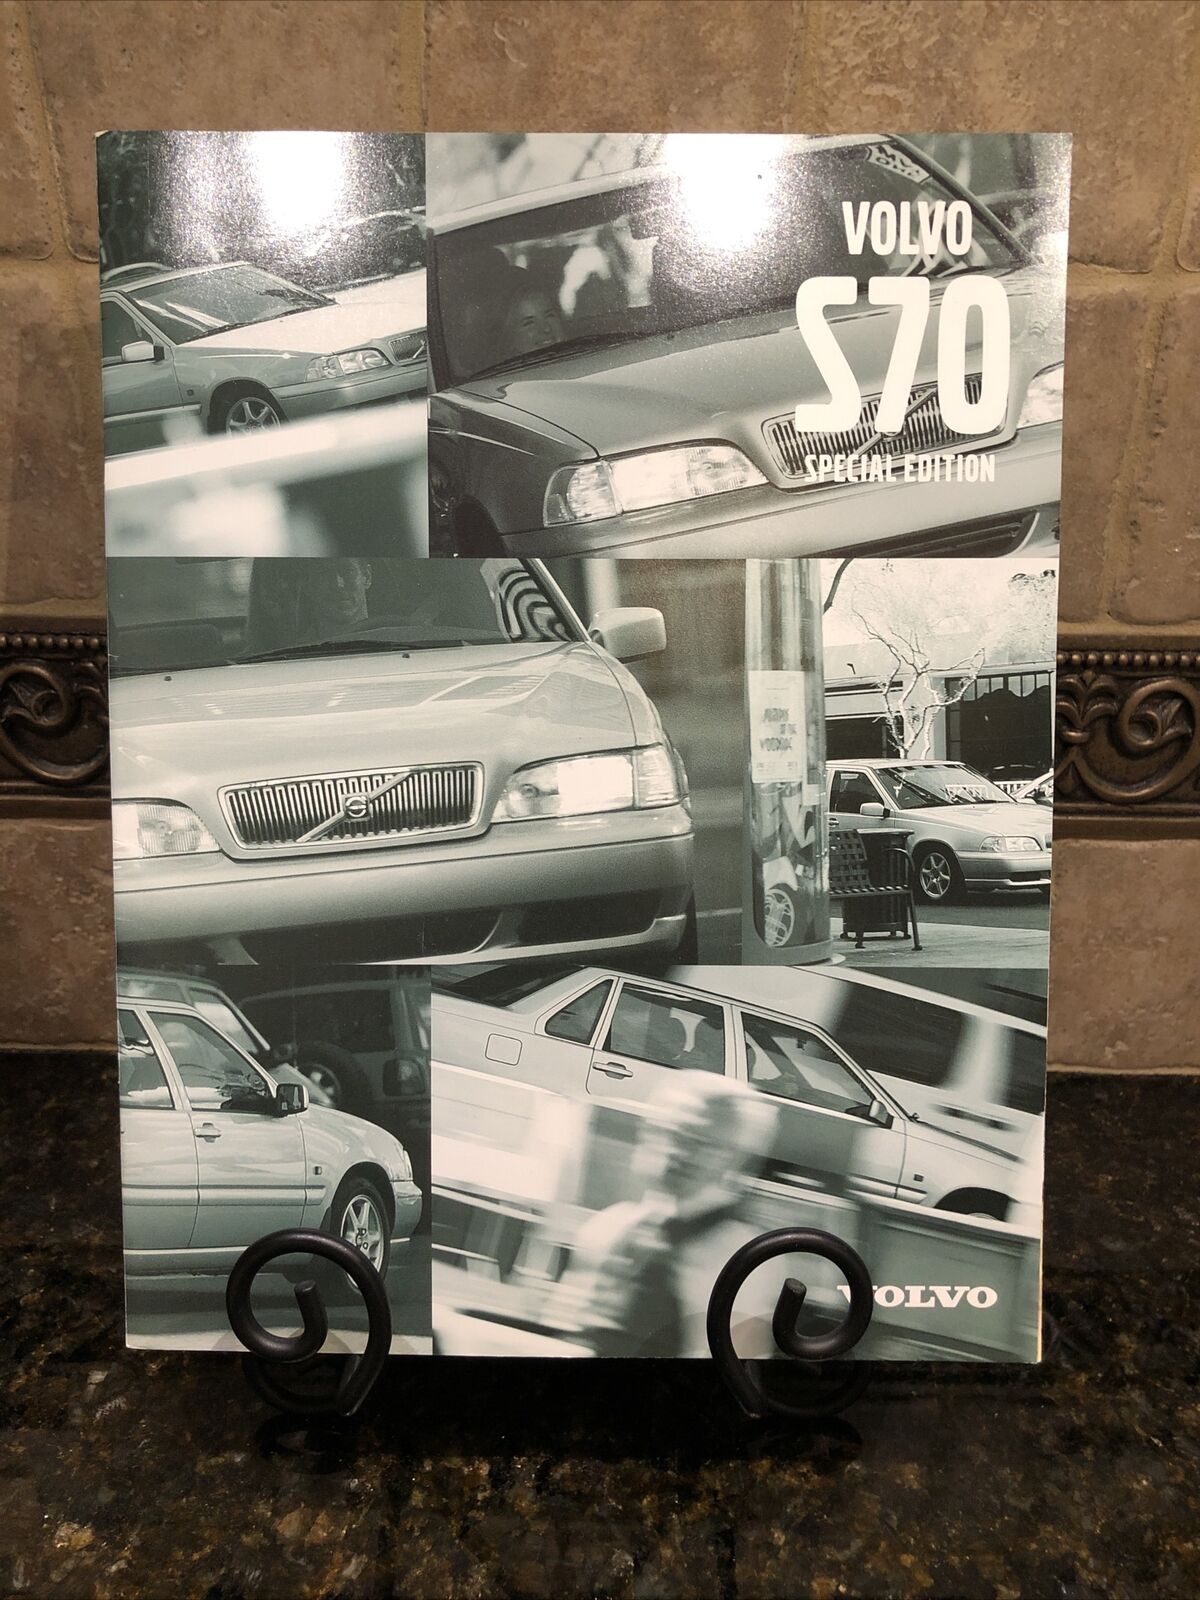 2000 VOLVO S70 SPECIAL EDITION CAR SALES BROCHURE CATALOG